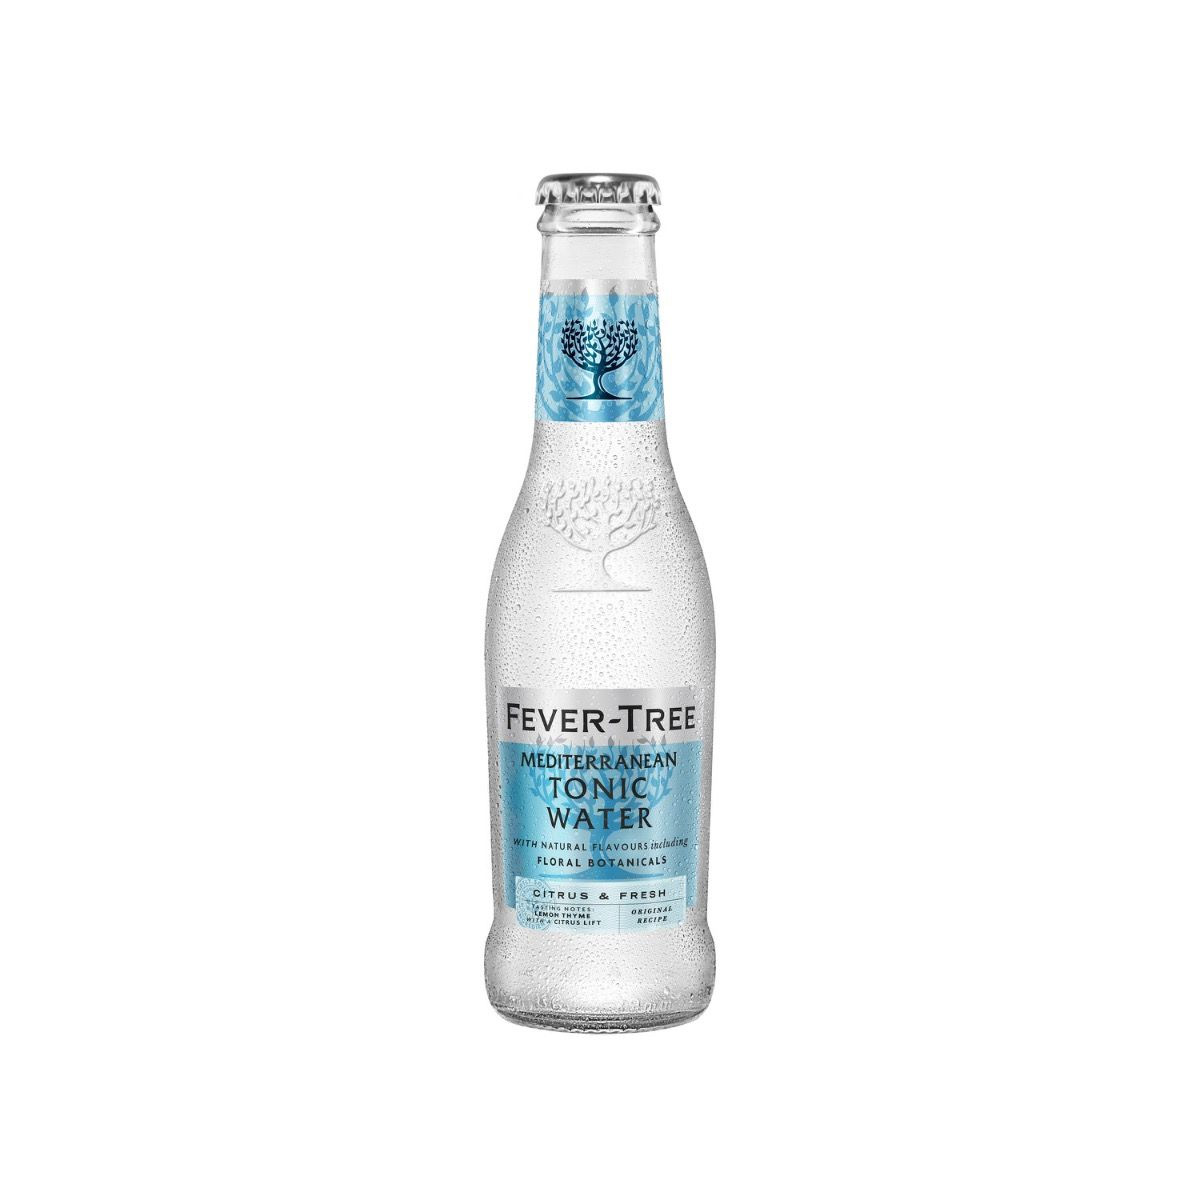 Brug Fever-Tree Mediterranean Tonic Water 200 ml til en forbedret oplevelse